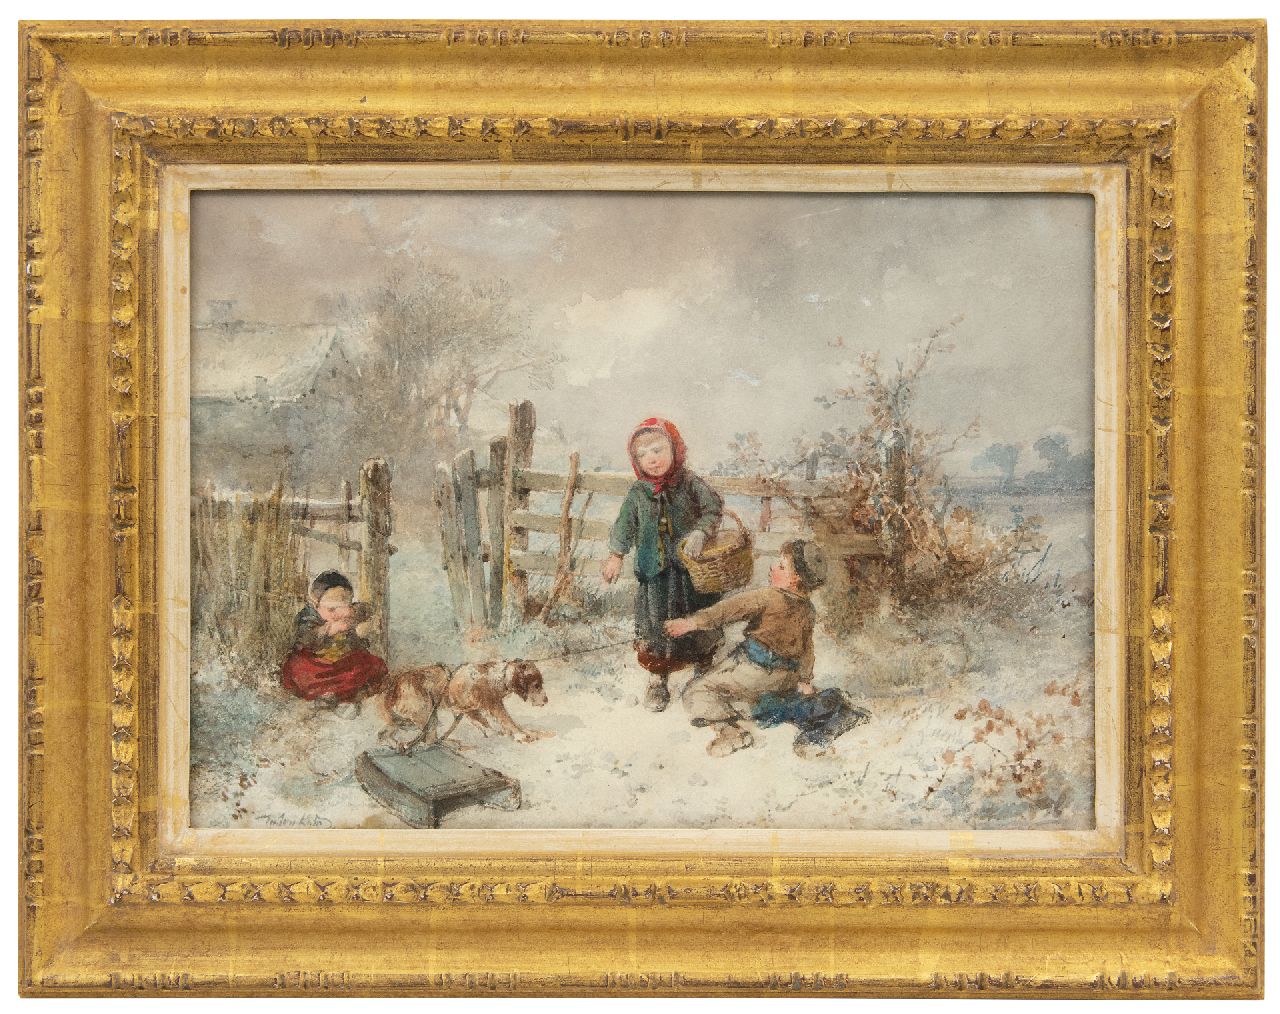 Kate J.M.H. ten | Johan 'Mari' Henri ten Kate | Aquarellen en tekeningen te koop aangeboden | Kinderen spelend in de sneeuw, aquarel op papier 25,7 x 35,9 cm, gesigneerd linksonder